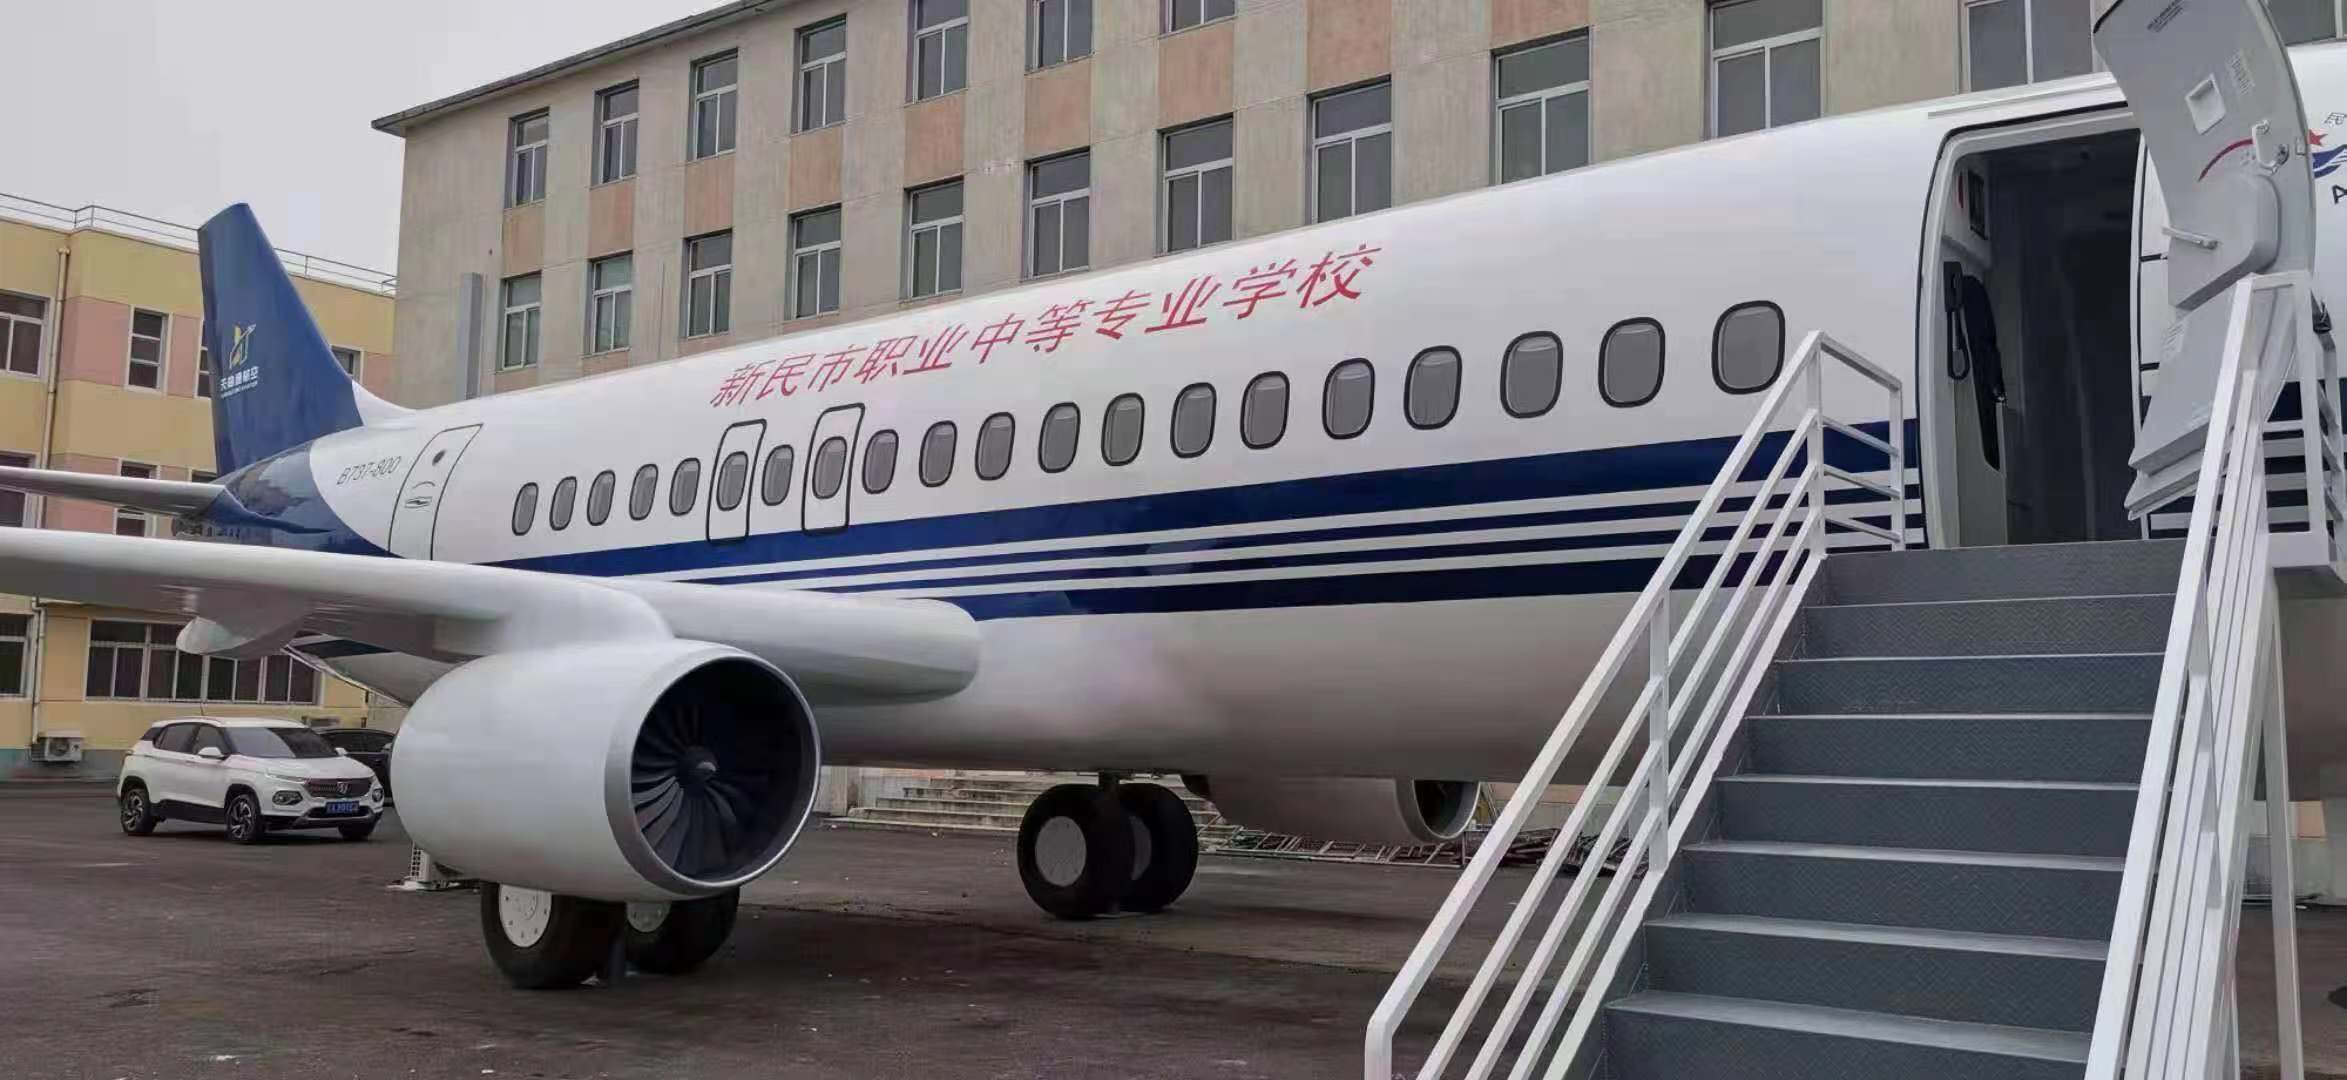 陕西高铁模拟舱厂家,1比1飞机模型厂家